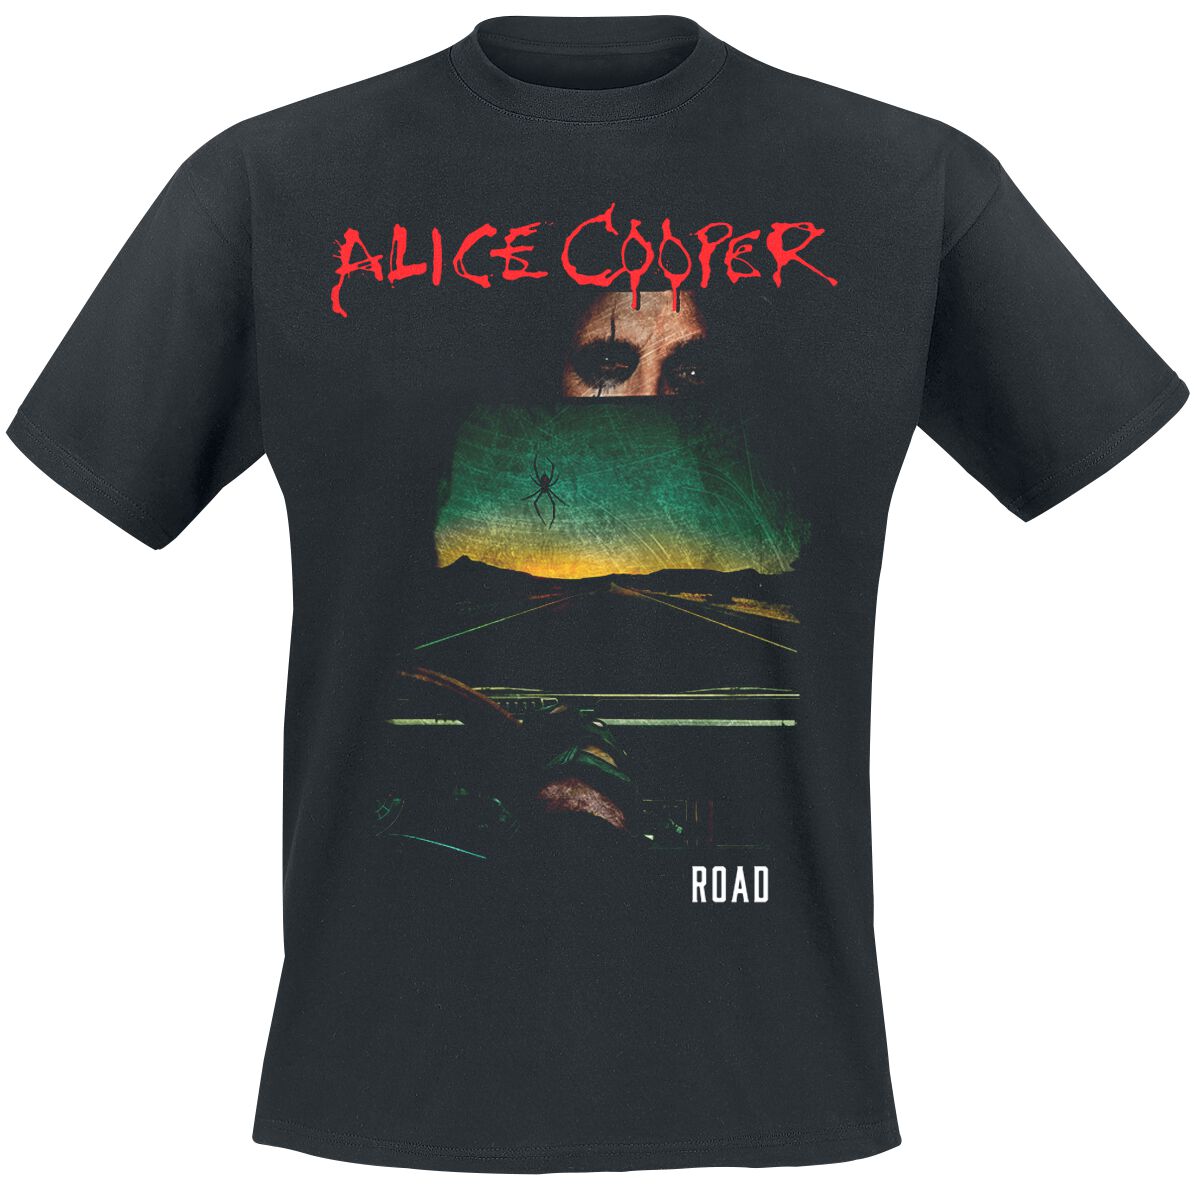 Alice Cooper T-Shirt - Road Cover Tracklist - S bis XXL - für Männer - Größe XXL - schwarz  - Lizenziertes Merchandise!